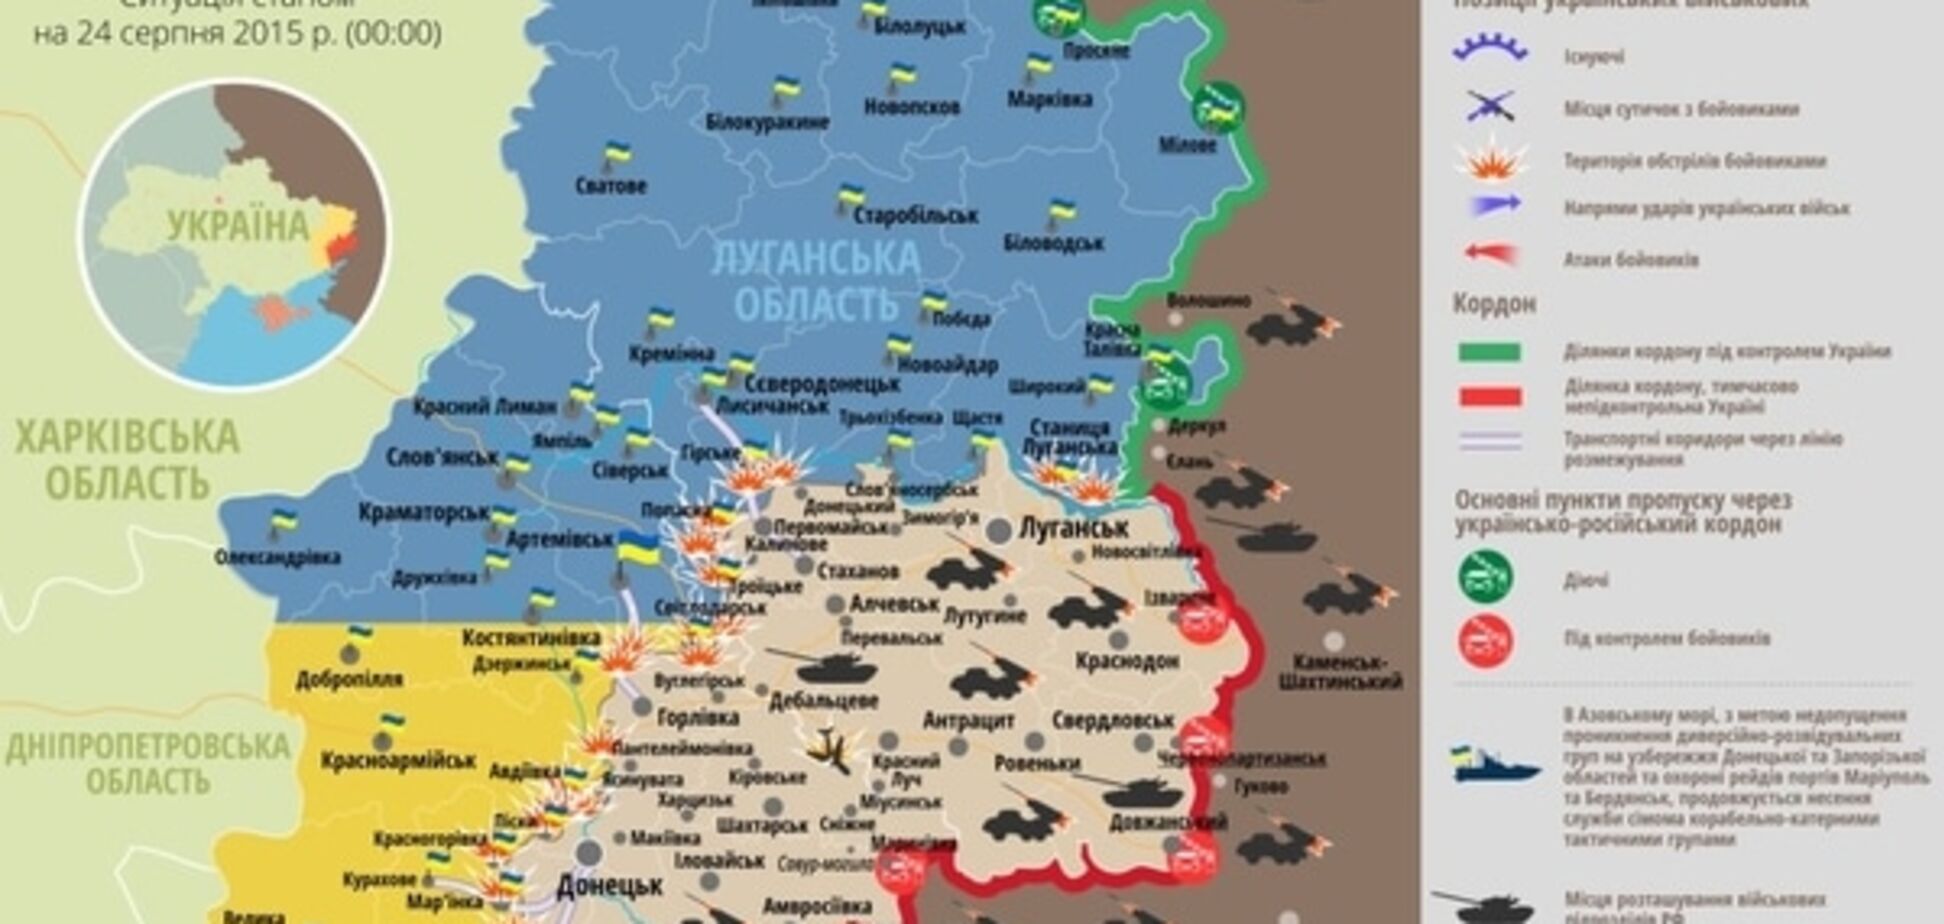 Ситуація на Донбасі загострюється: опублікована актуальна мапа АТО